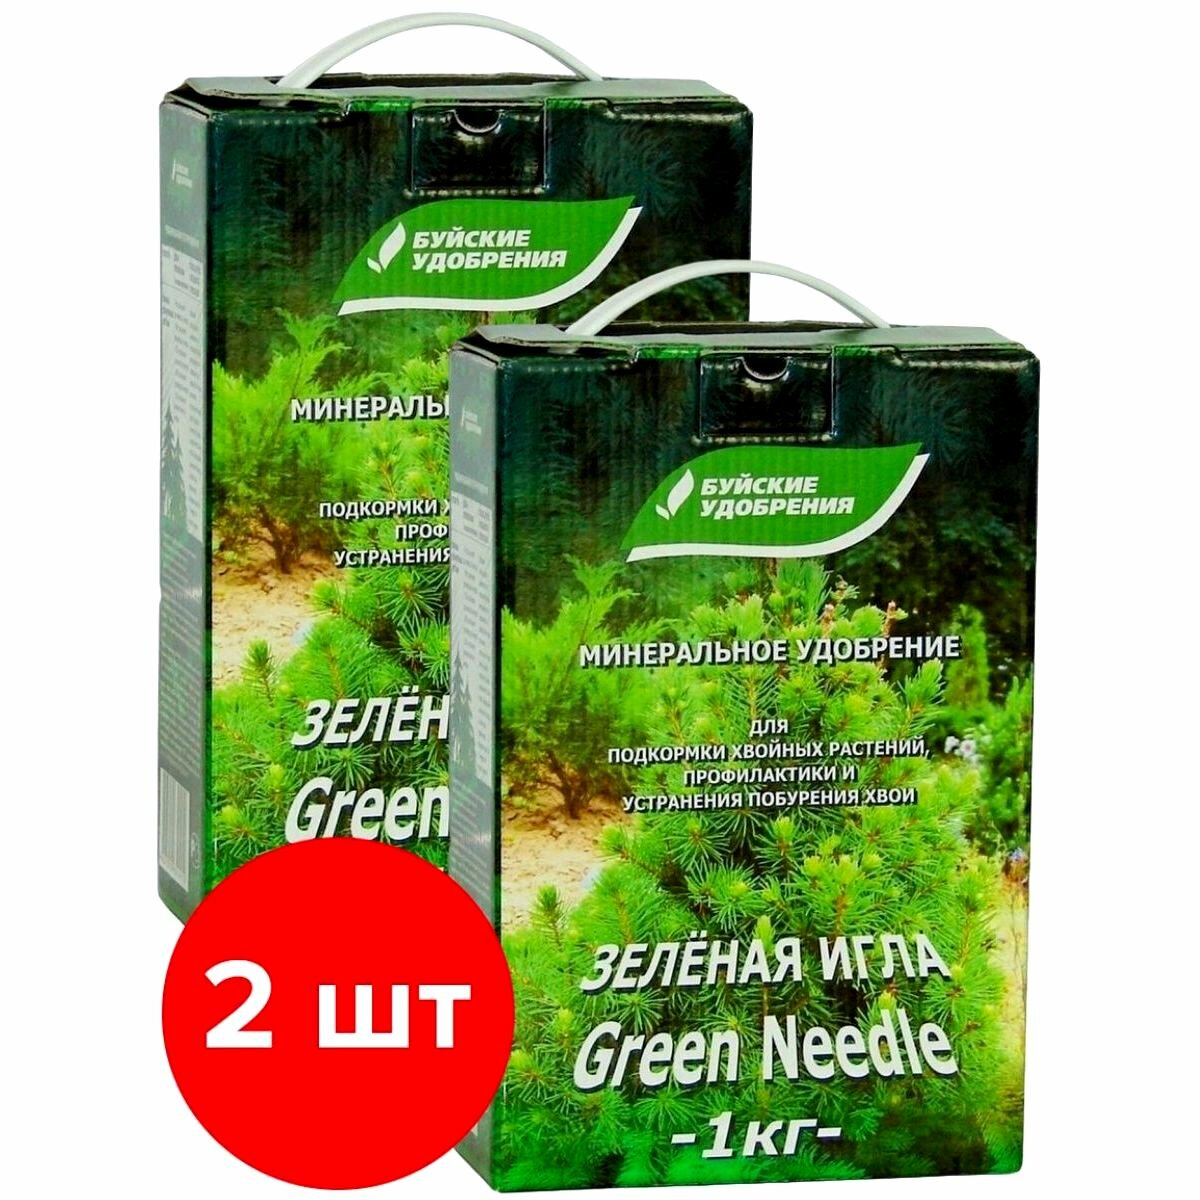 Средство от побурения хвои Буйские удобрения Зеленая Игла, 2шт по 1кг (2 кг)